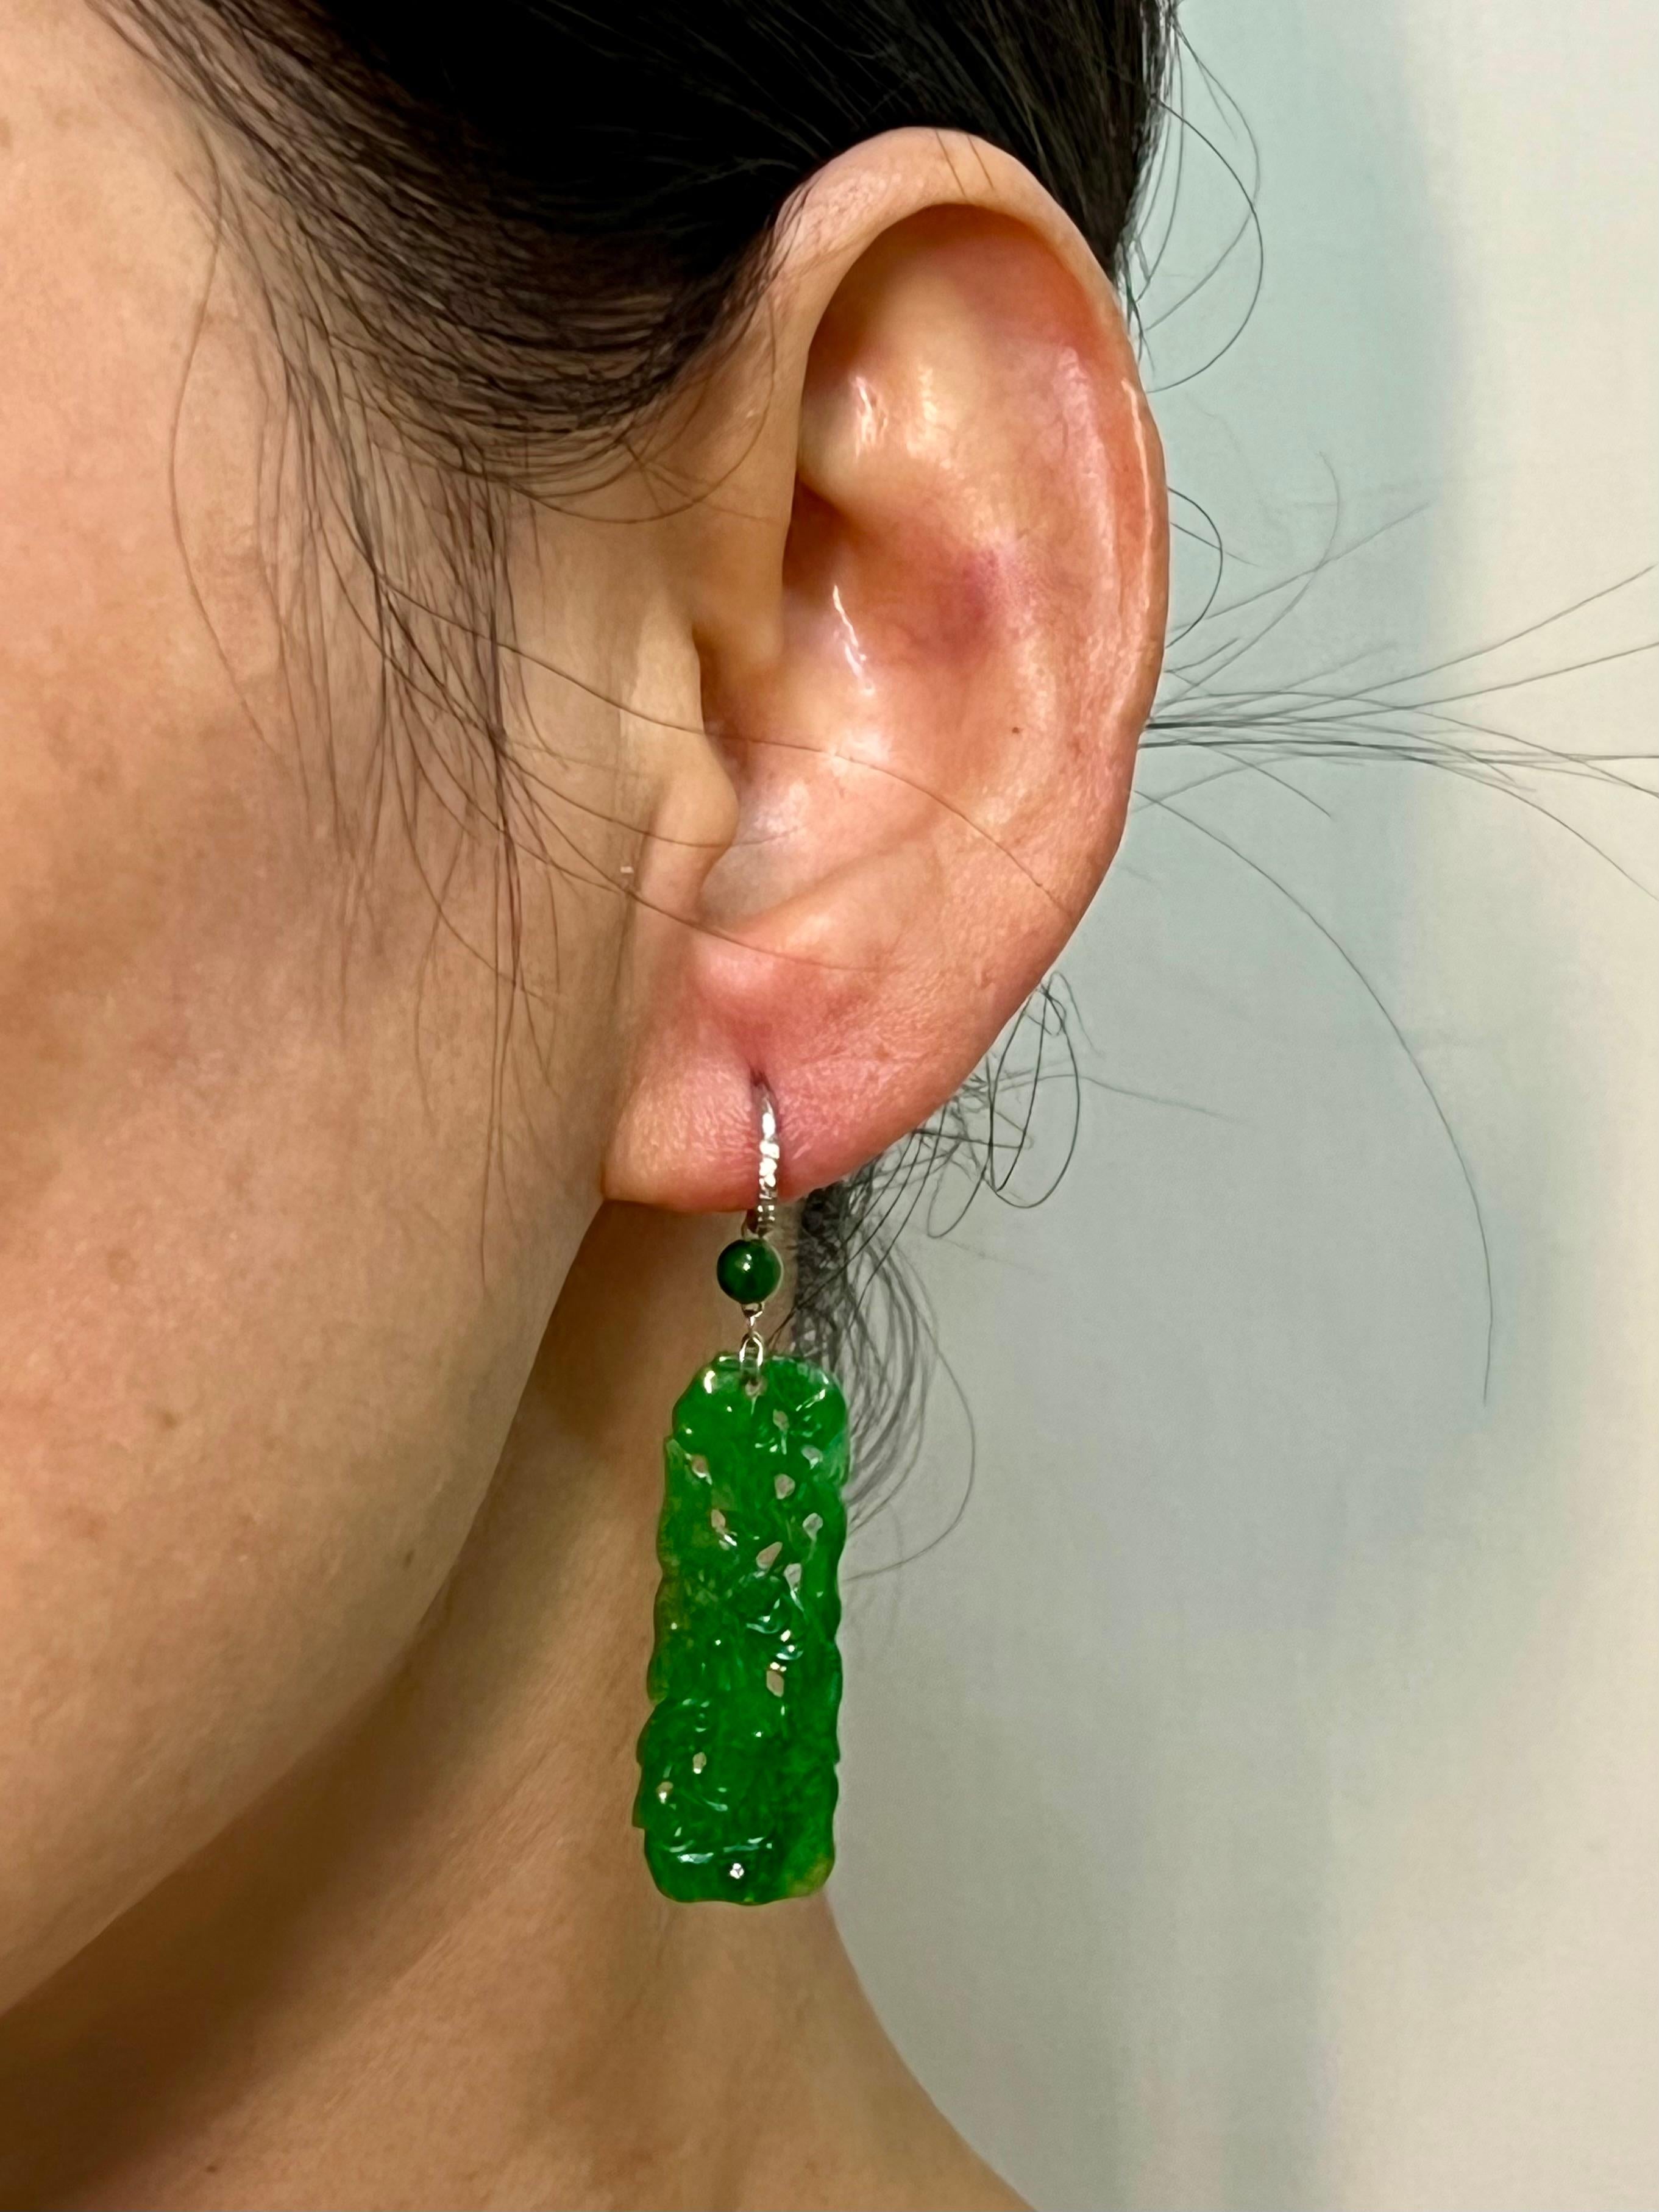 jade earrings vintage